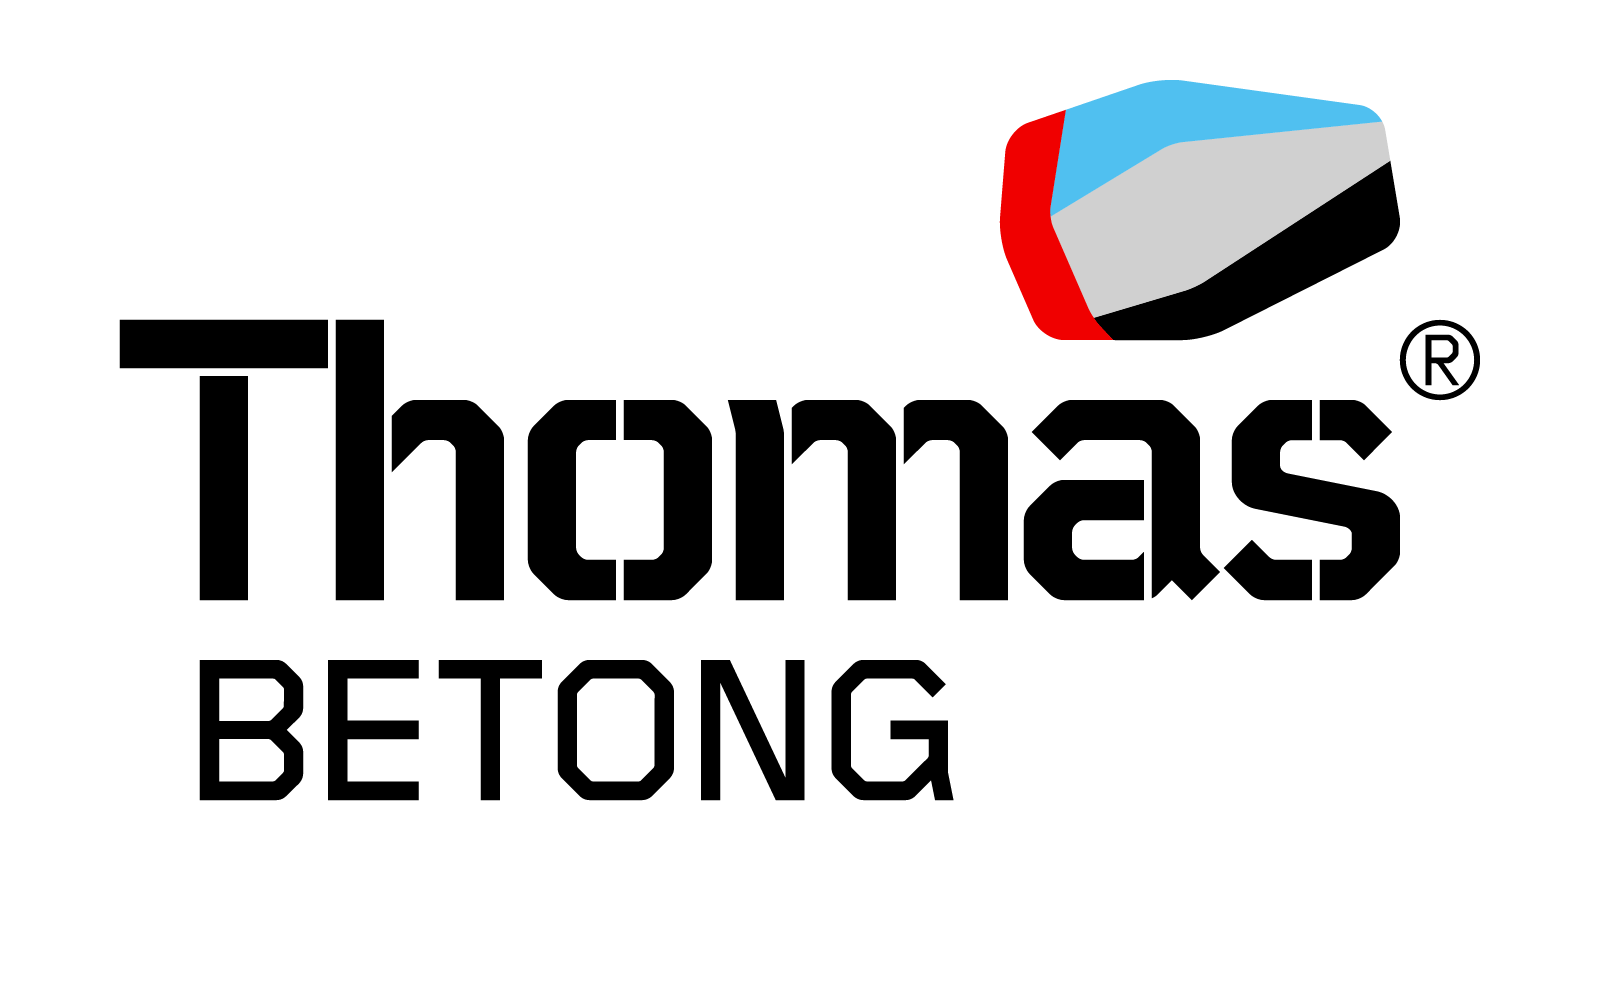 Thomas Betong